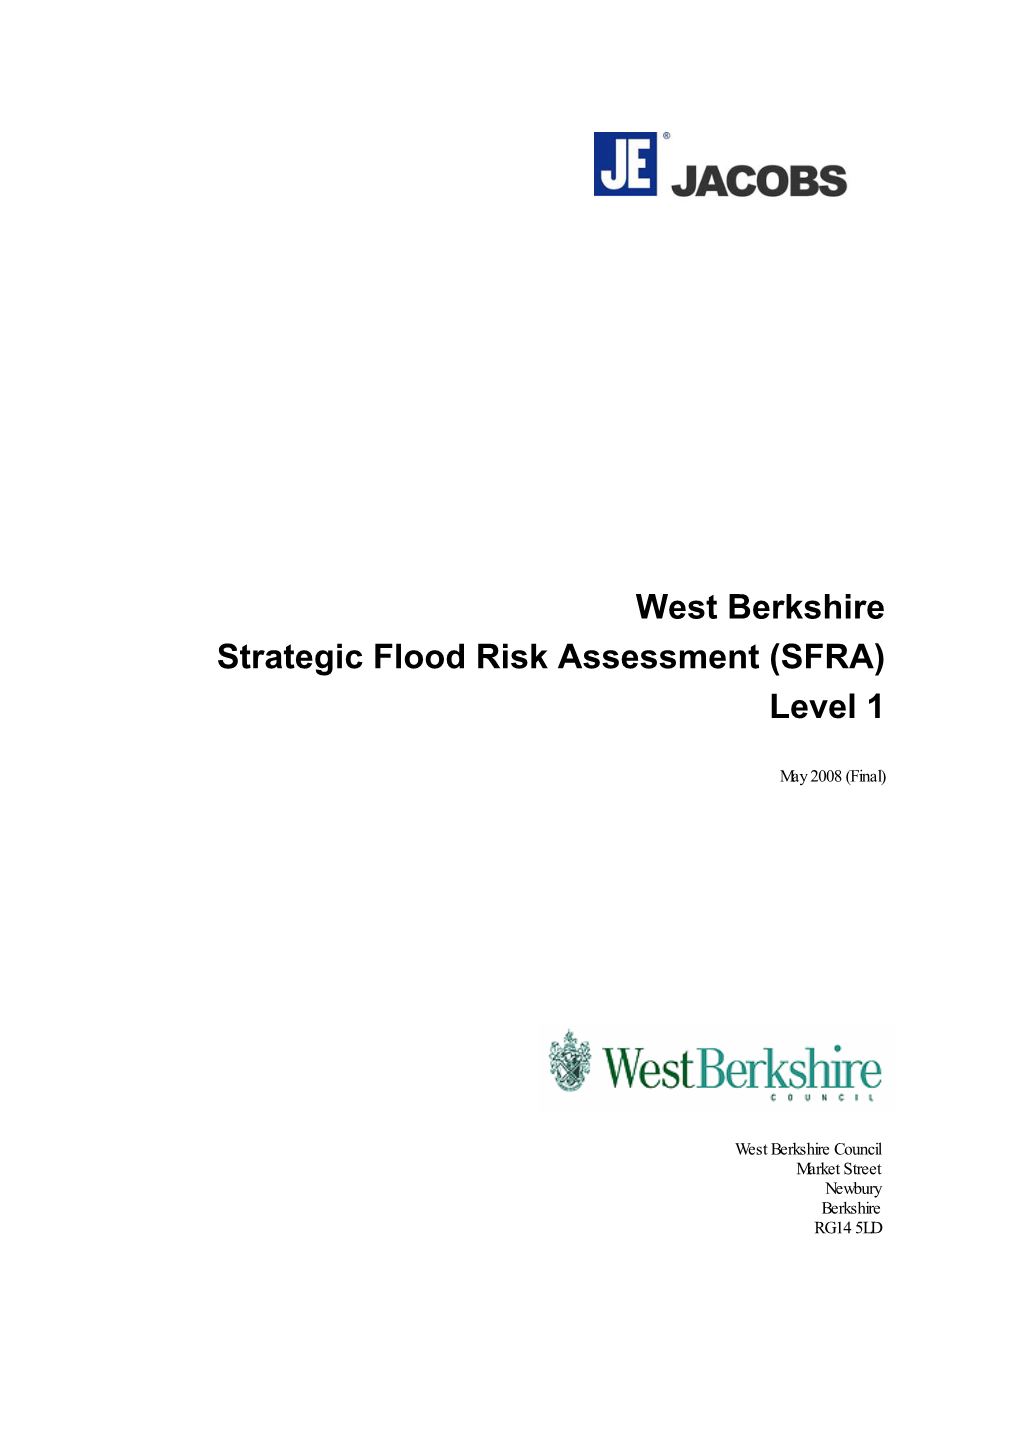 West Berkshire Strategic Flood Risk Assessment (SFRA) Level 1